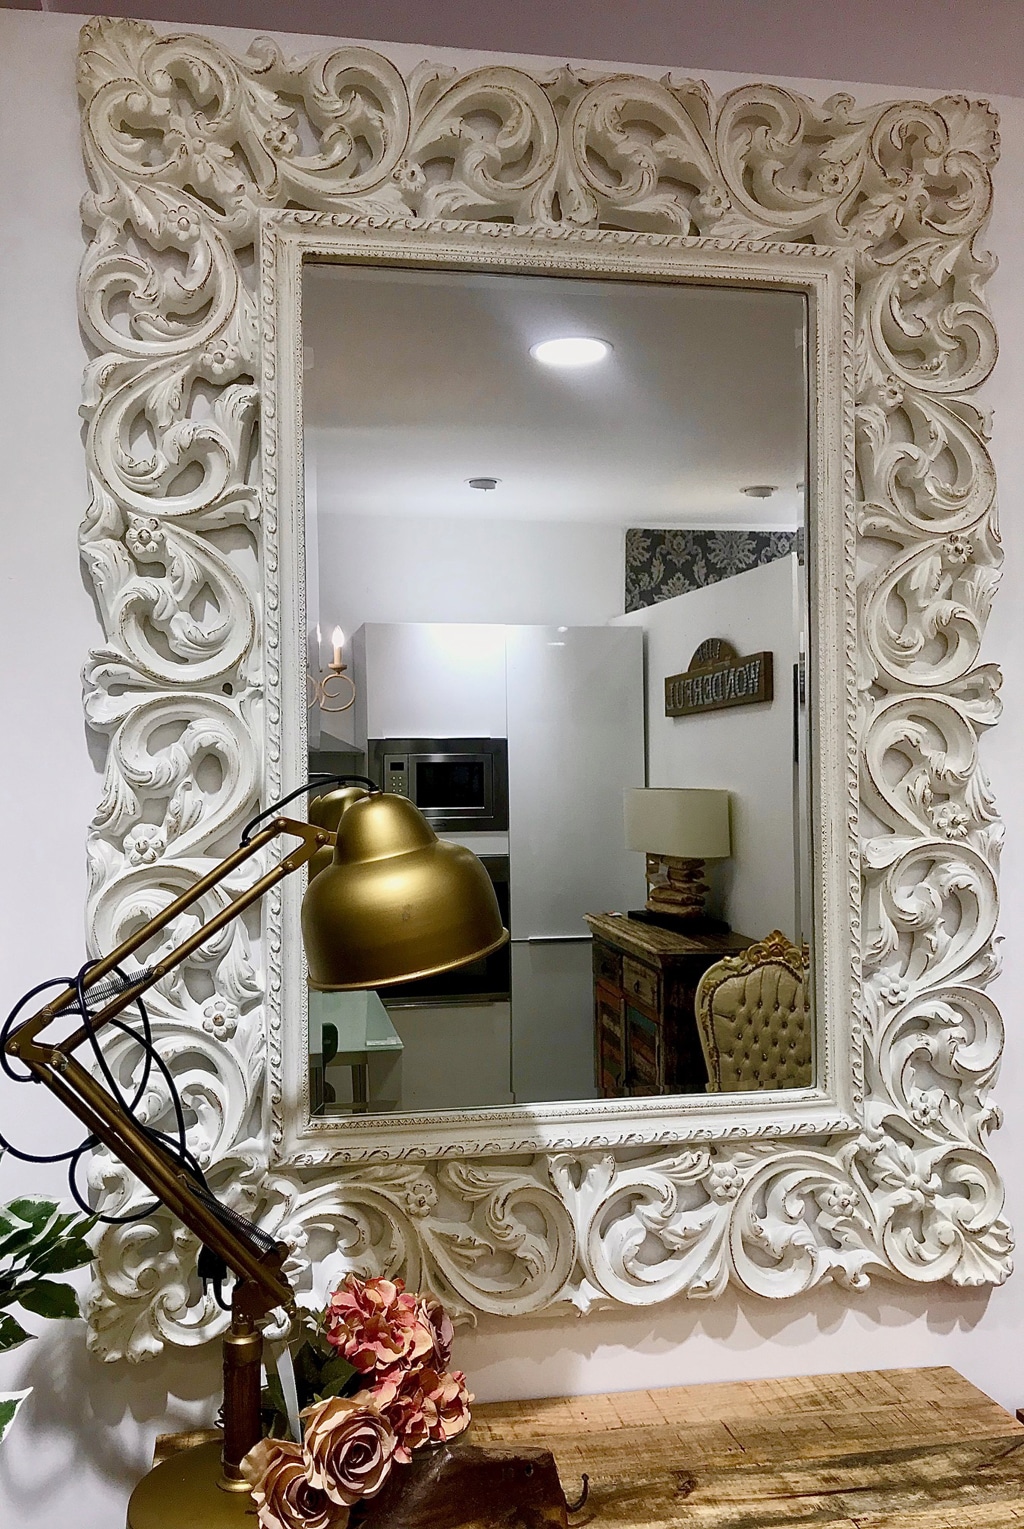 Specchio ingresso cornice barocco 105x85 cm Made in Italy Specchio cornice  bianca